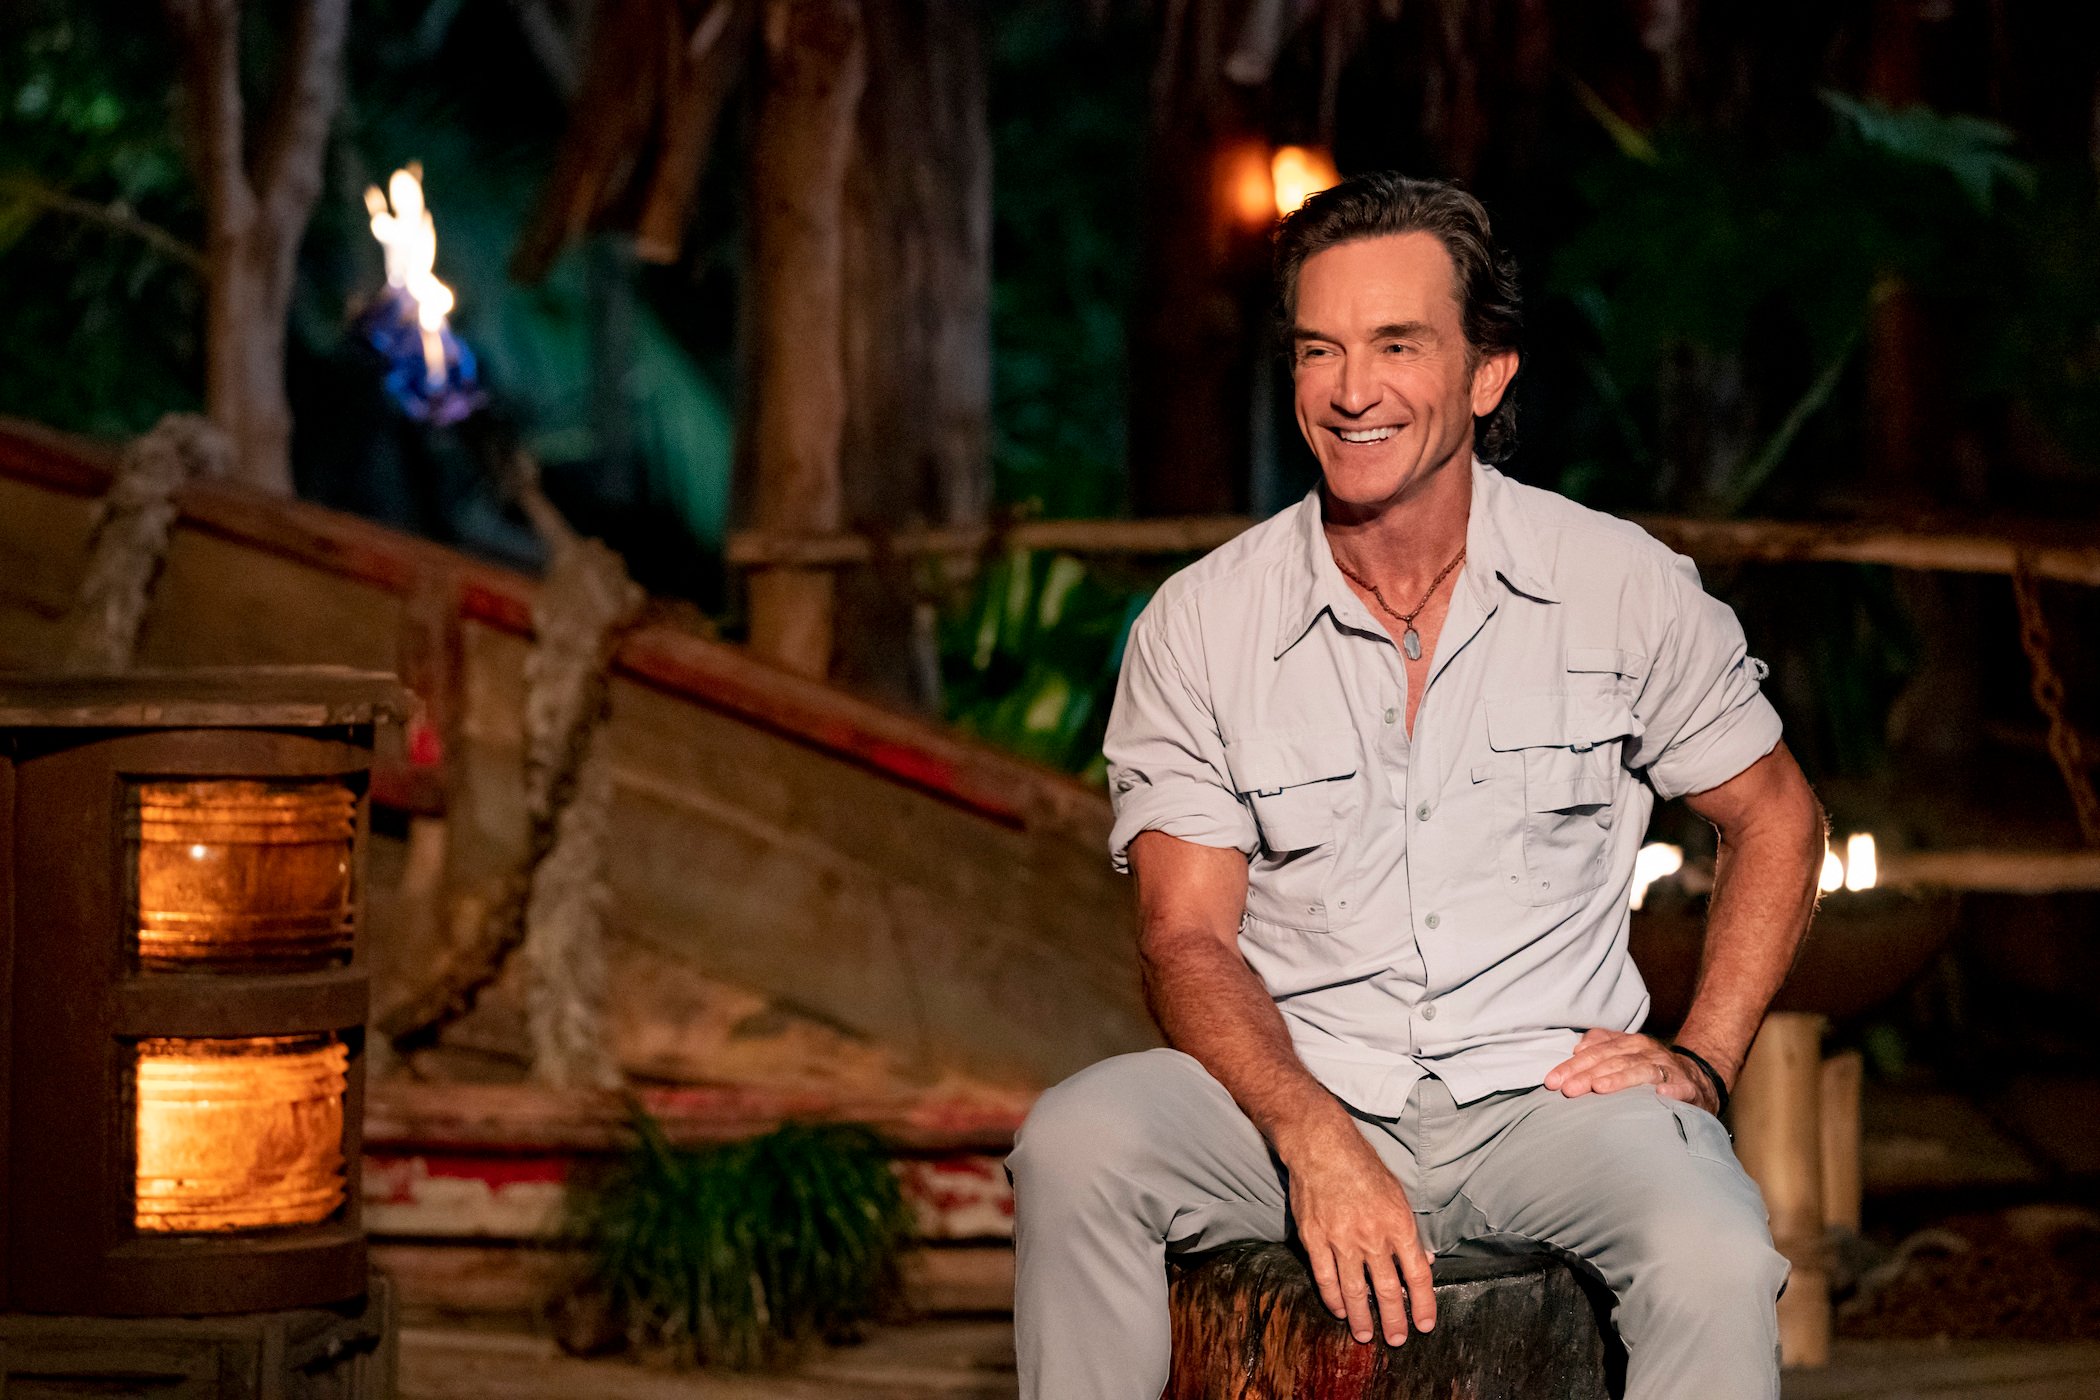 Jeff Probst, host of 'Survivor' sits on set smiling.